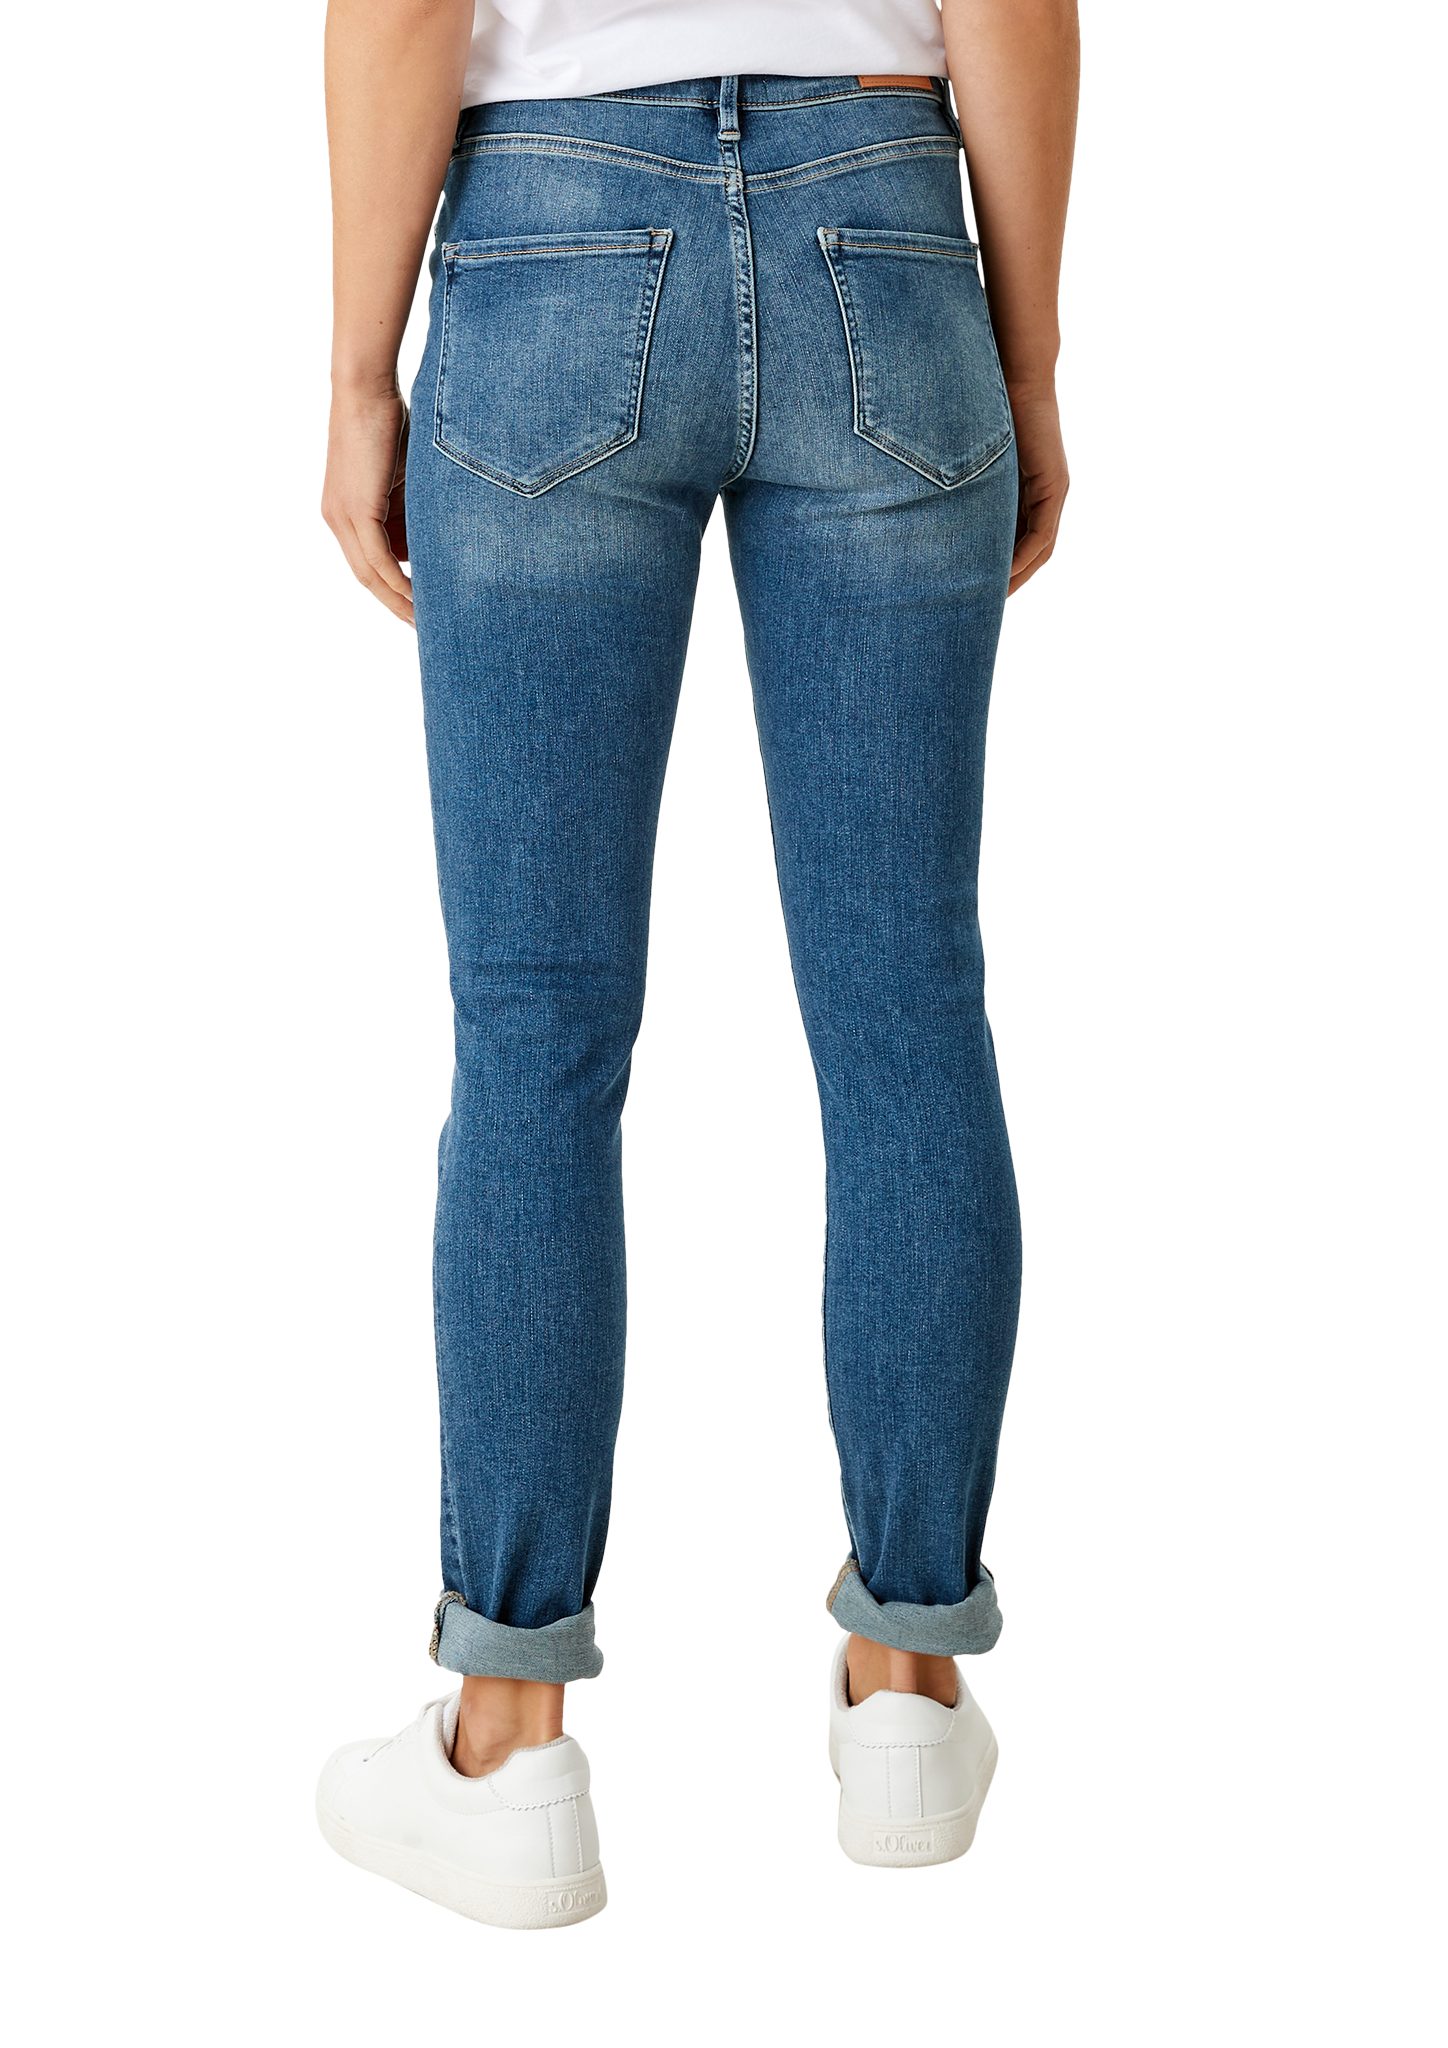 Mid / Skinny blue Jeans s.Oliver Skinny Fit Leg Leder-Patch, Izabell medium 5-Pocket-Jeans Waschung / Rise /